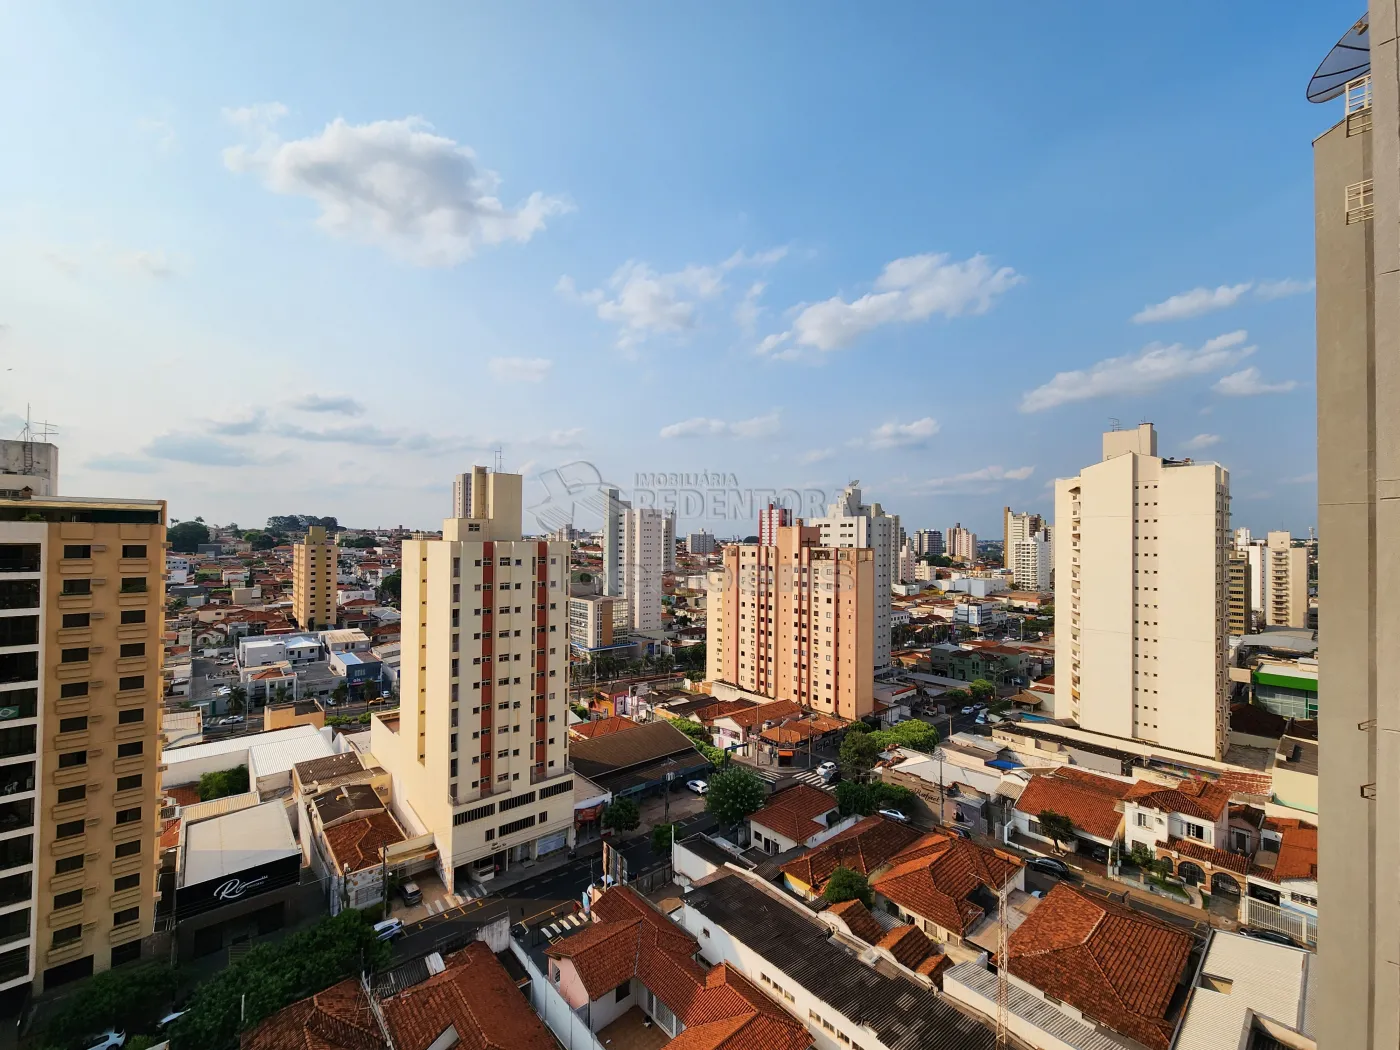 Alugar Apartamento / Padrão em São José do Rio Preto R$ 1.300,00 - Foto 5